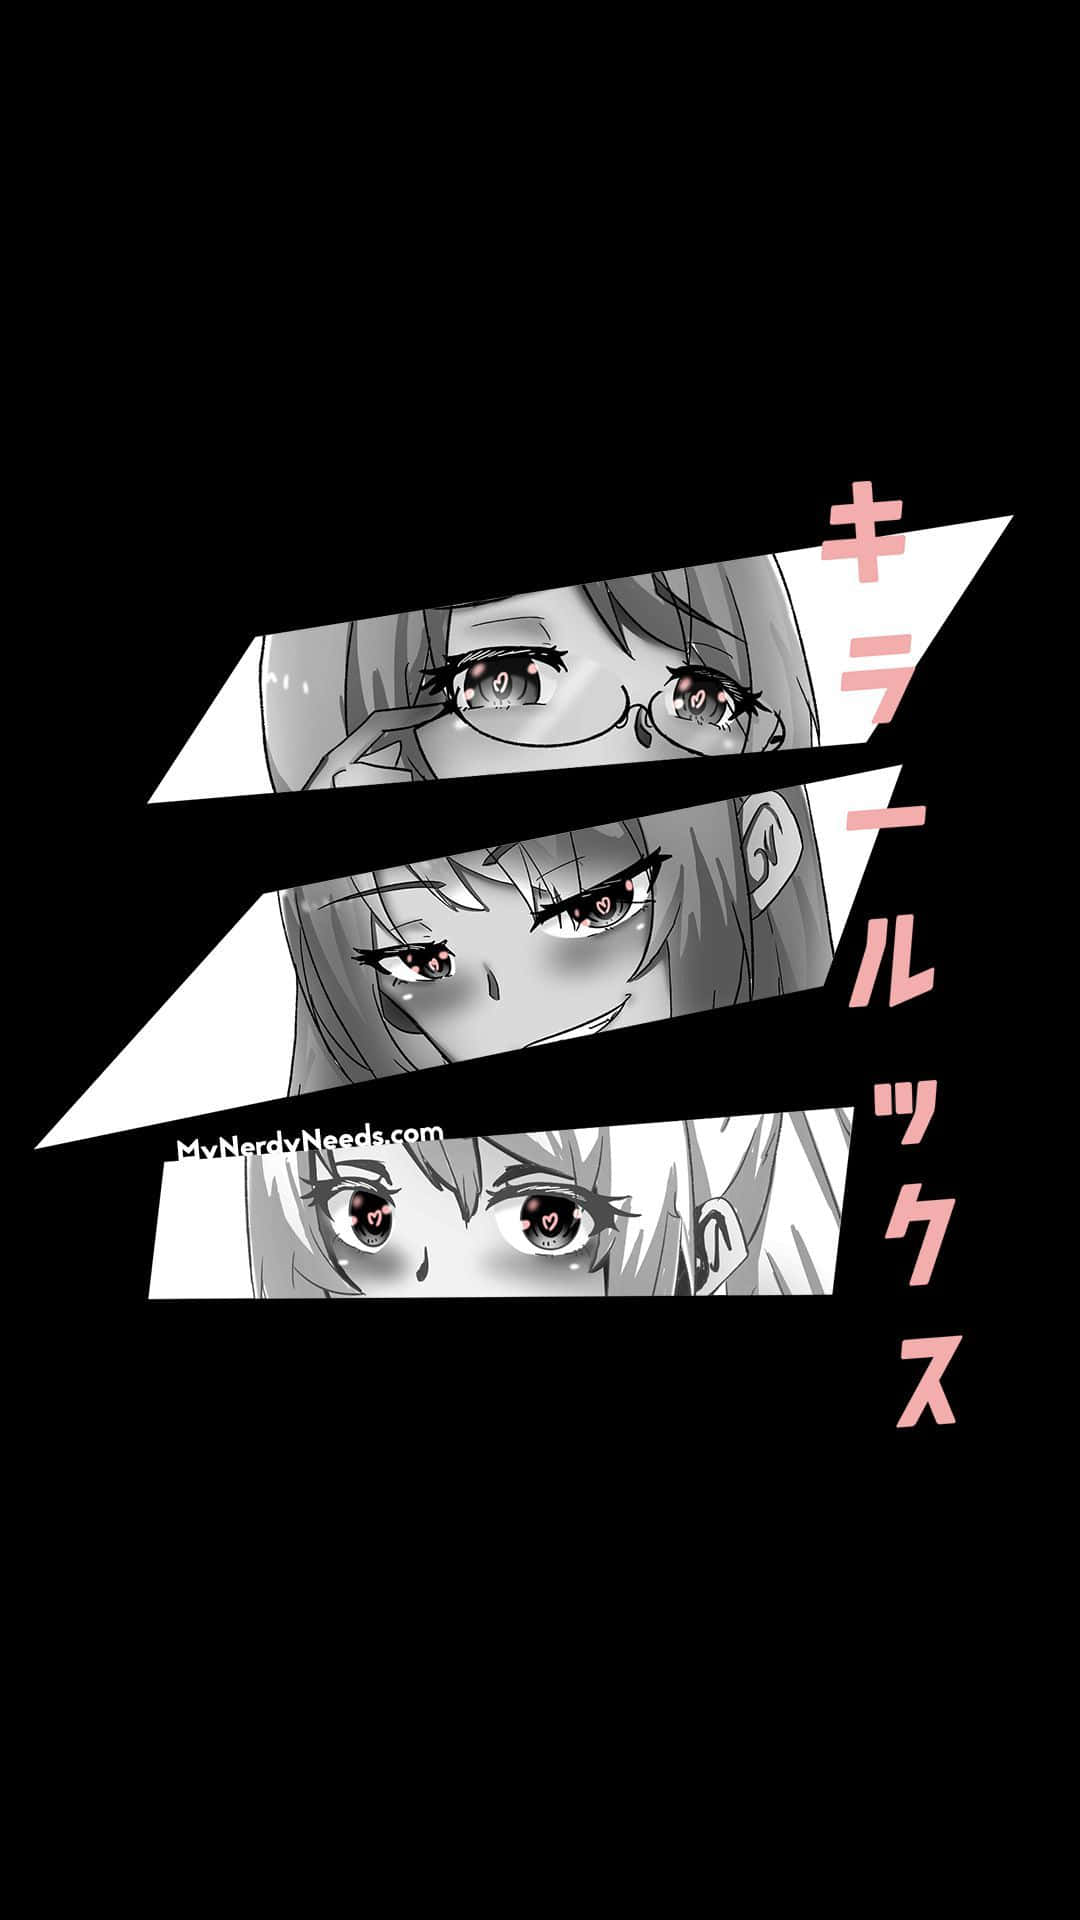 Dark Aesthetic Anime Girls' Eyes Wallpaper